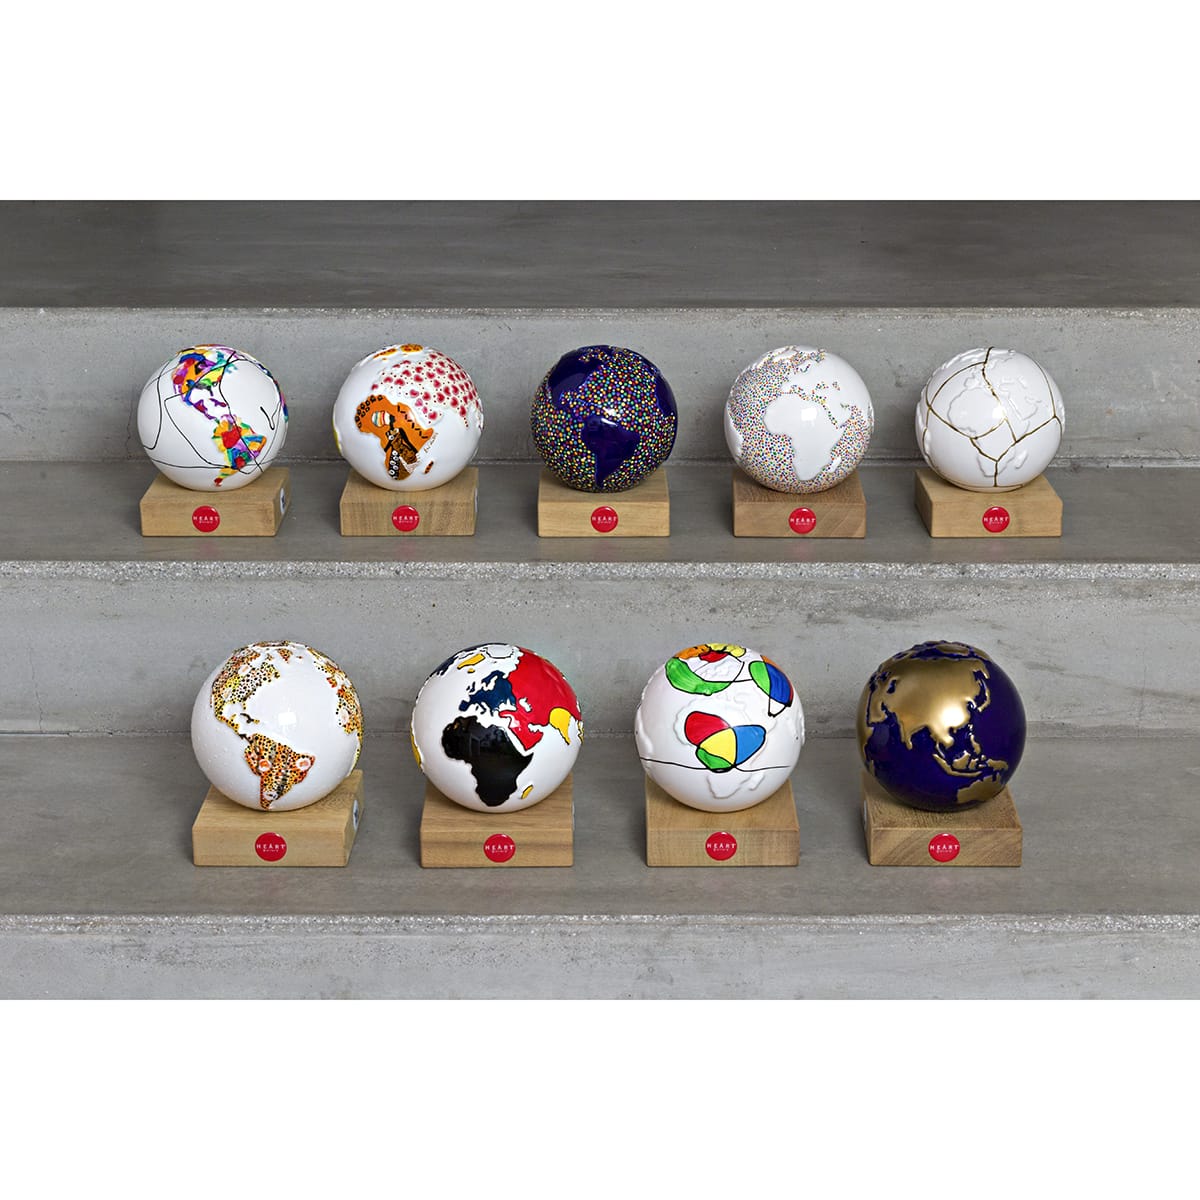 9 globi in ceramica che rappresentano il pianeta terra dipinti artisticamente a mano.